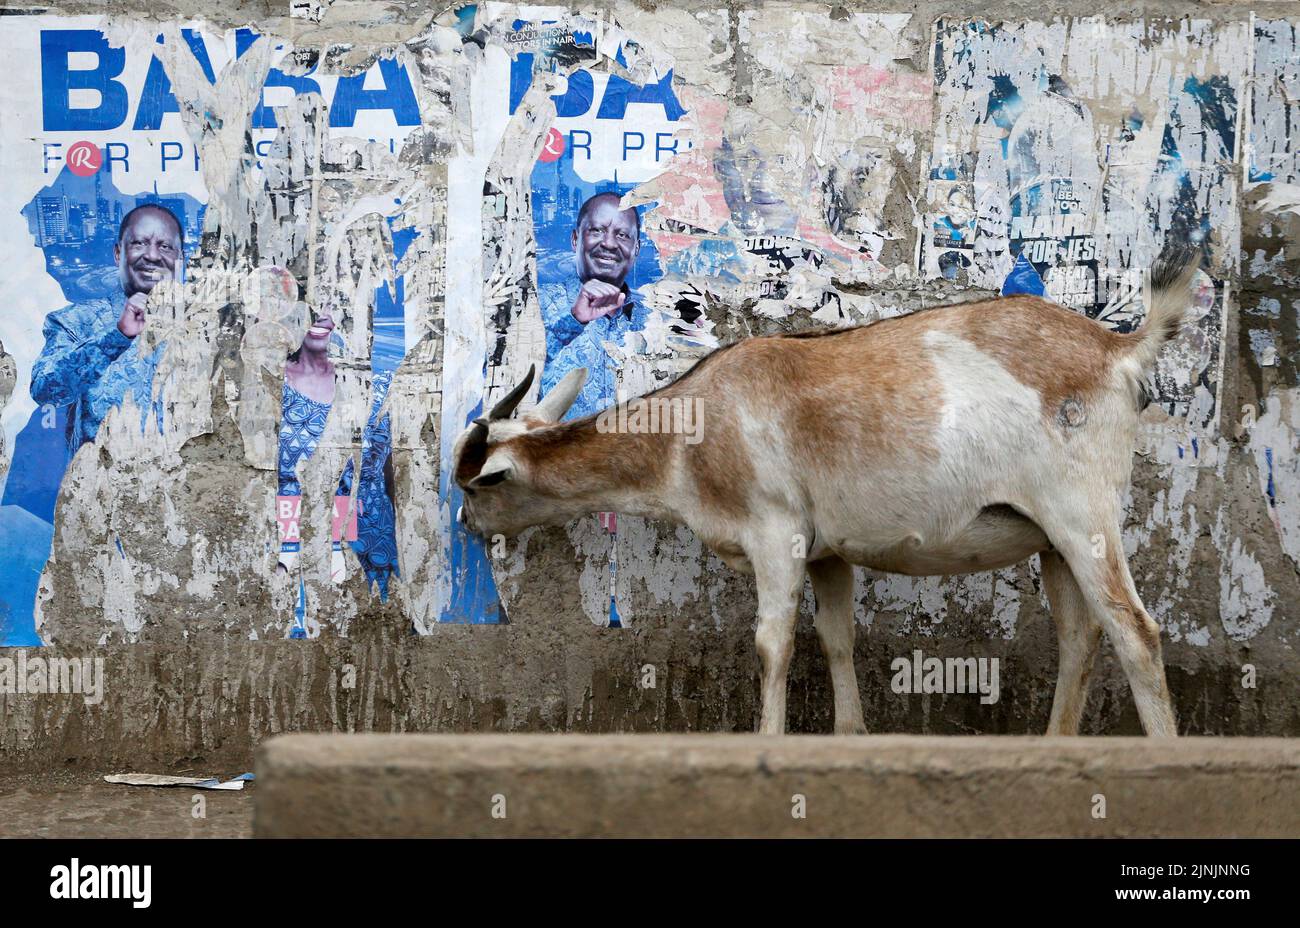 Una cabra come carteles de la campaña pegados en una pared después de las elecciones generales conducidas por la Comisión Independiente Electoral y de Fronteras (IEBC) en Nairobi, Kenia el 12 de agosto de 2022. REUTERS/Thomas Mukoya Foto de stock